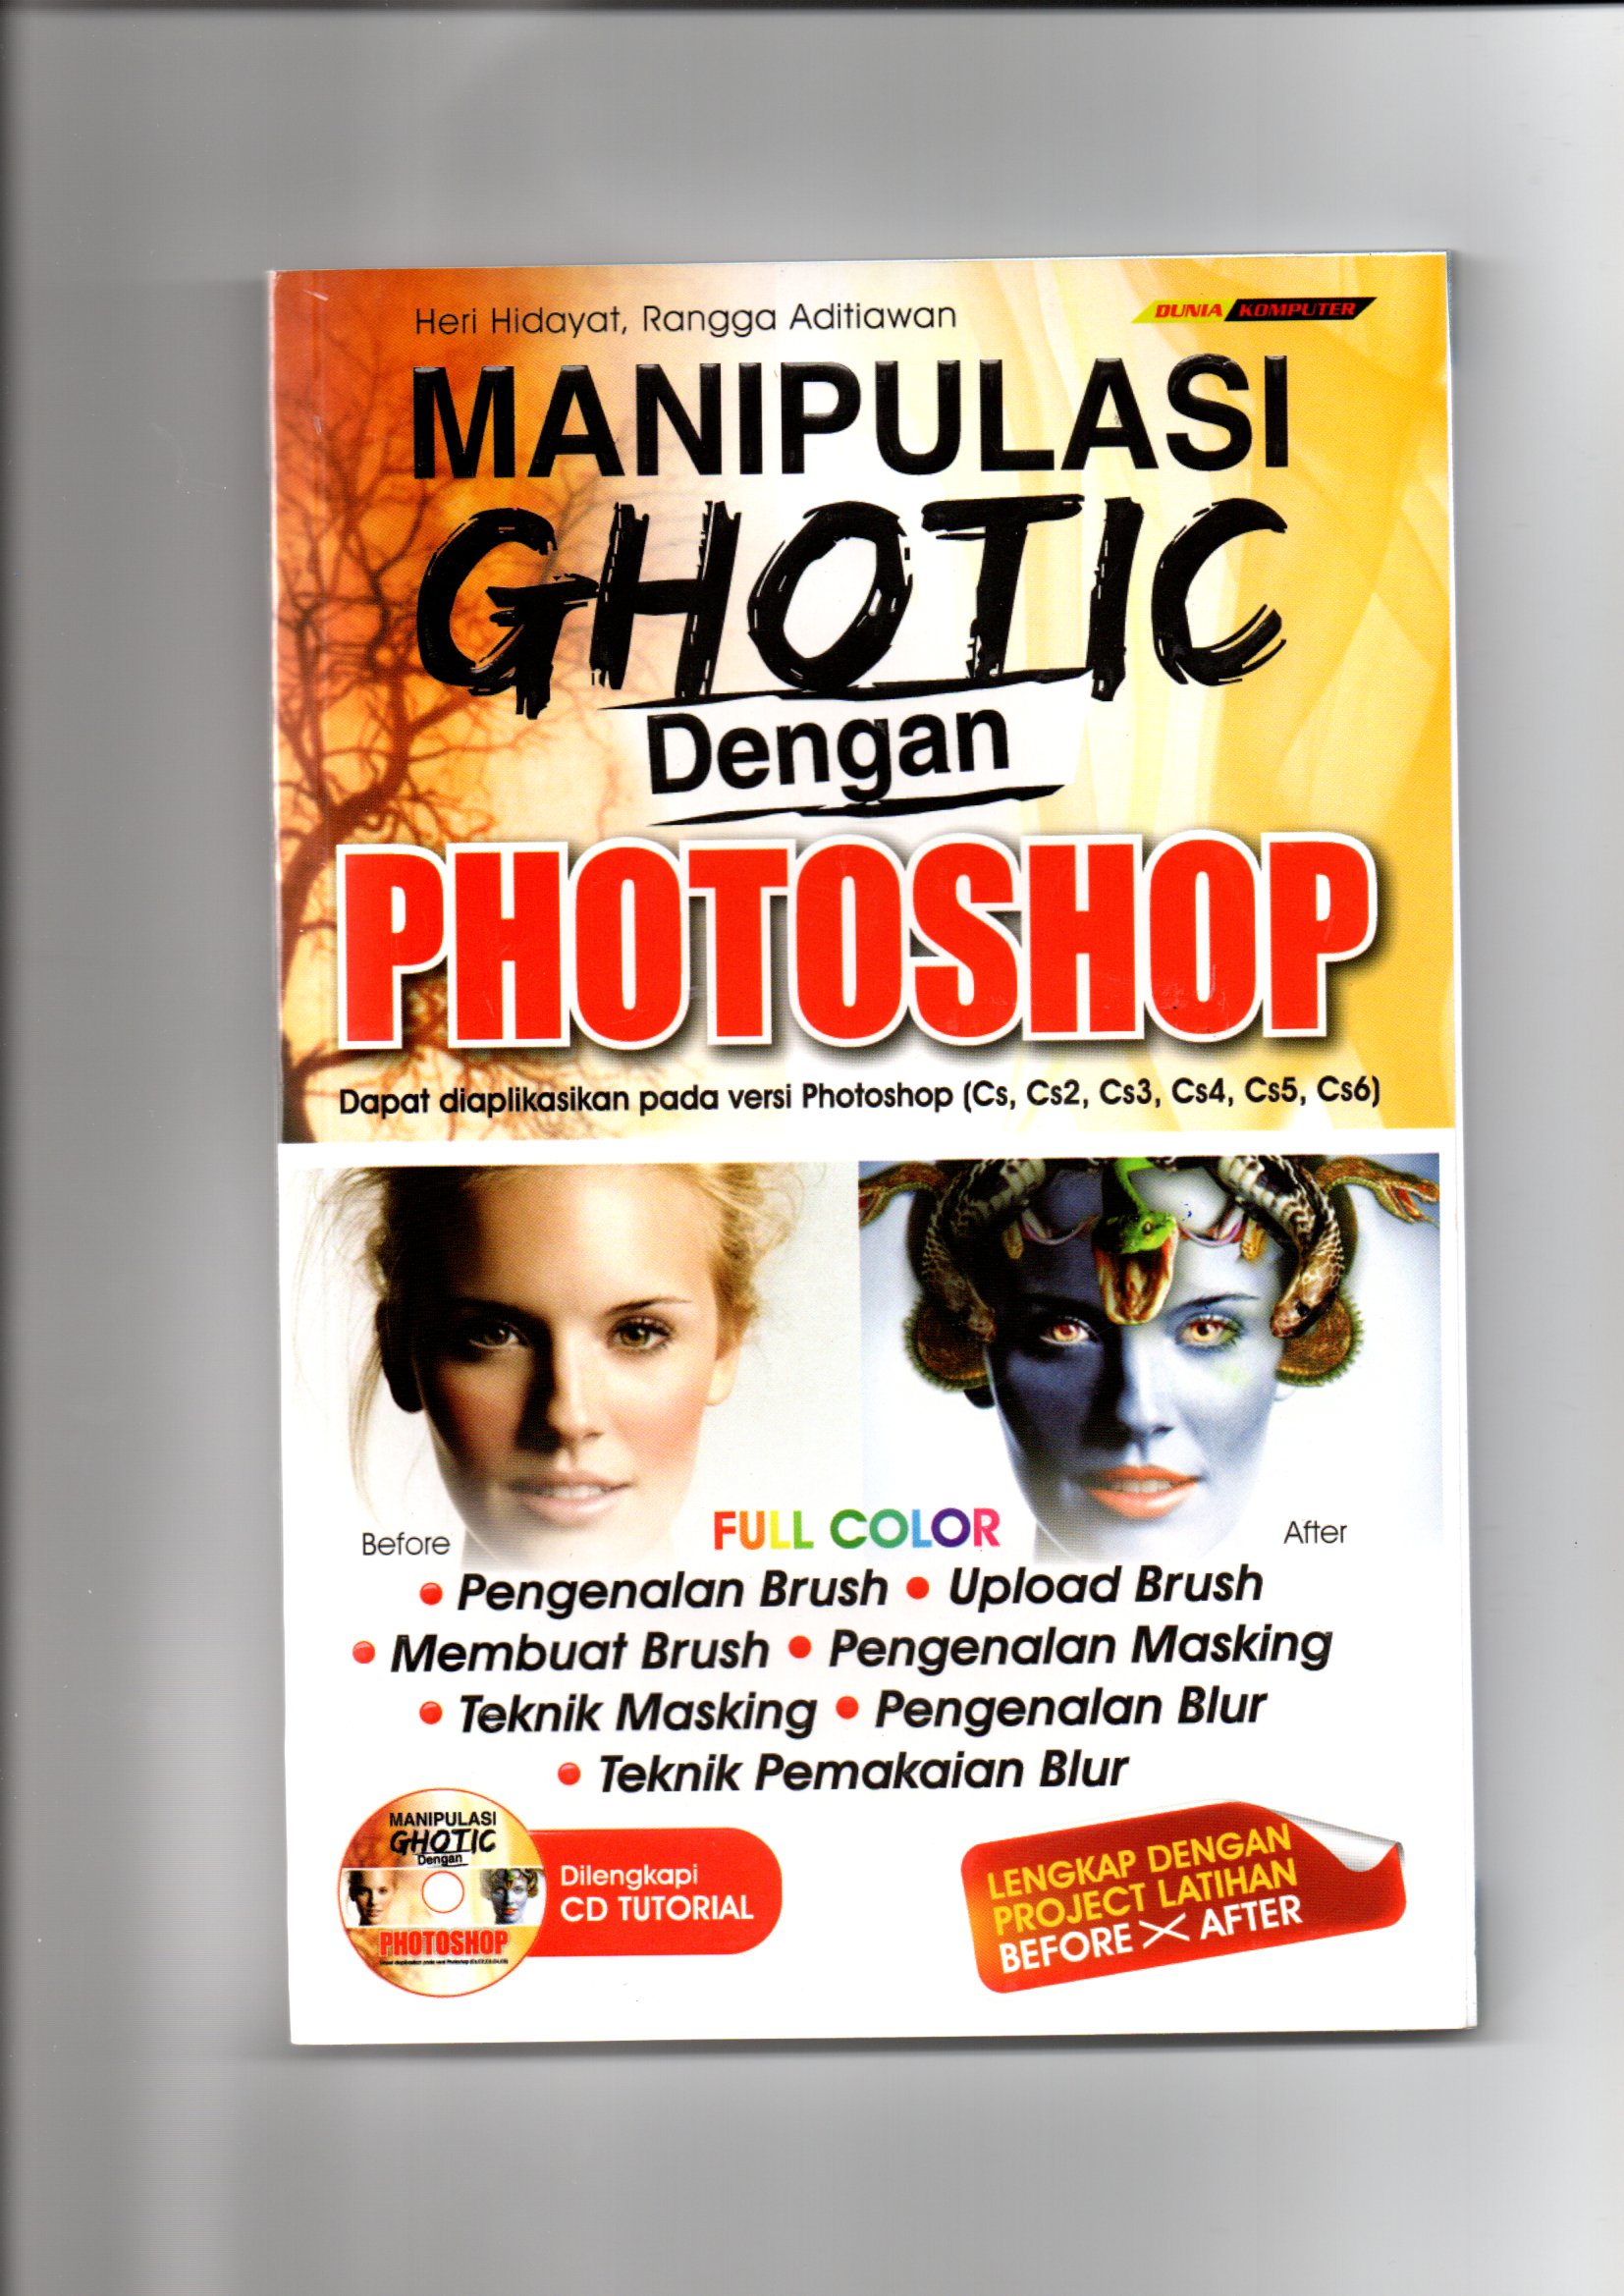 Manipulasi ghotic dengan photoshop